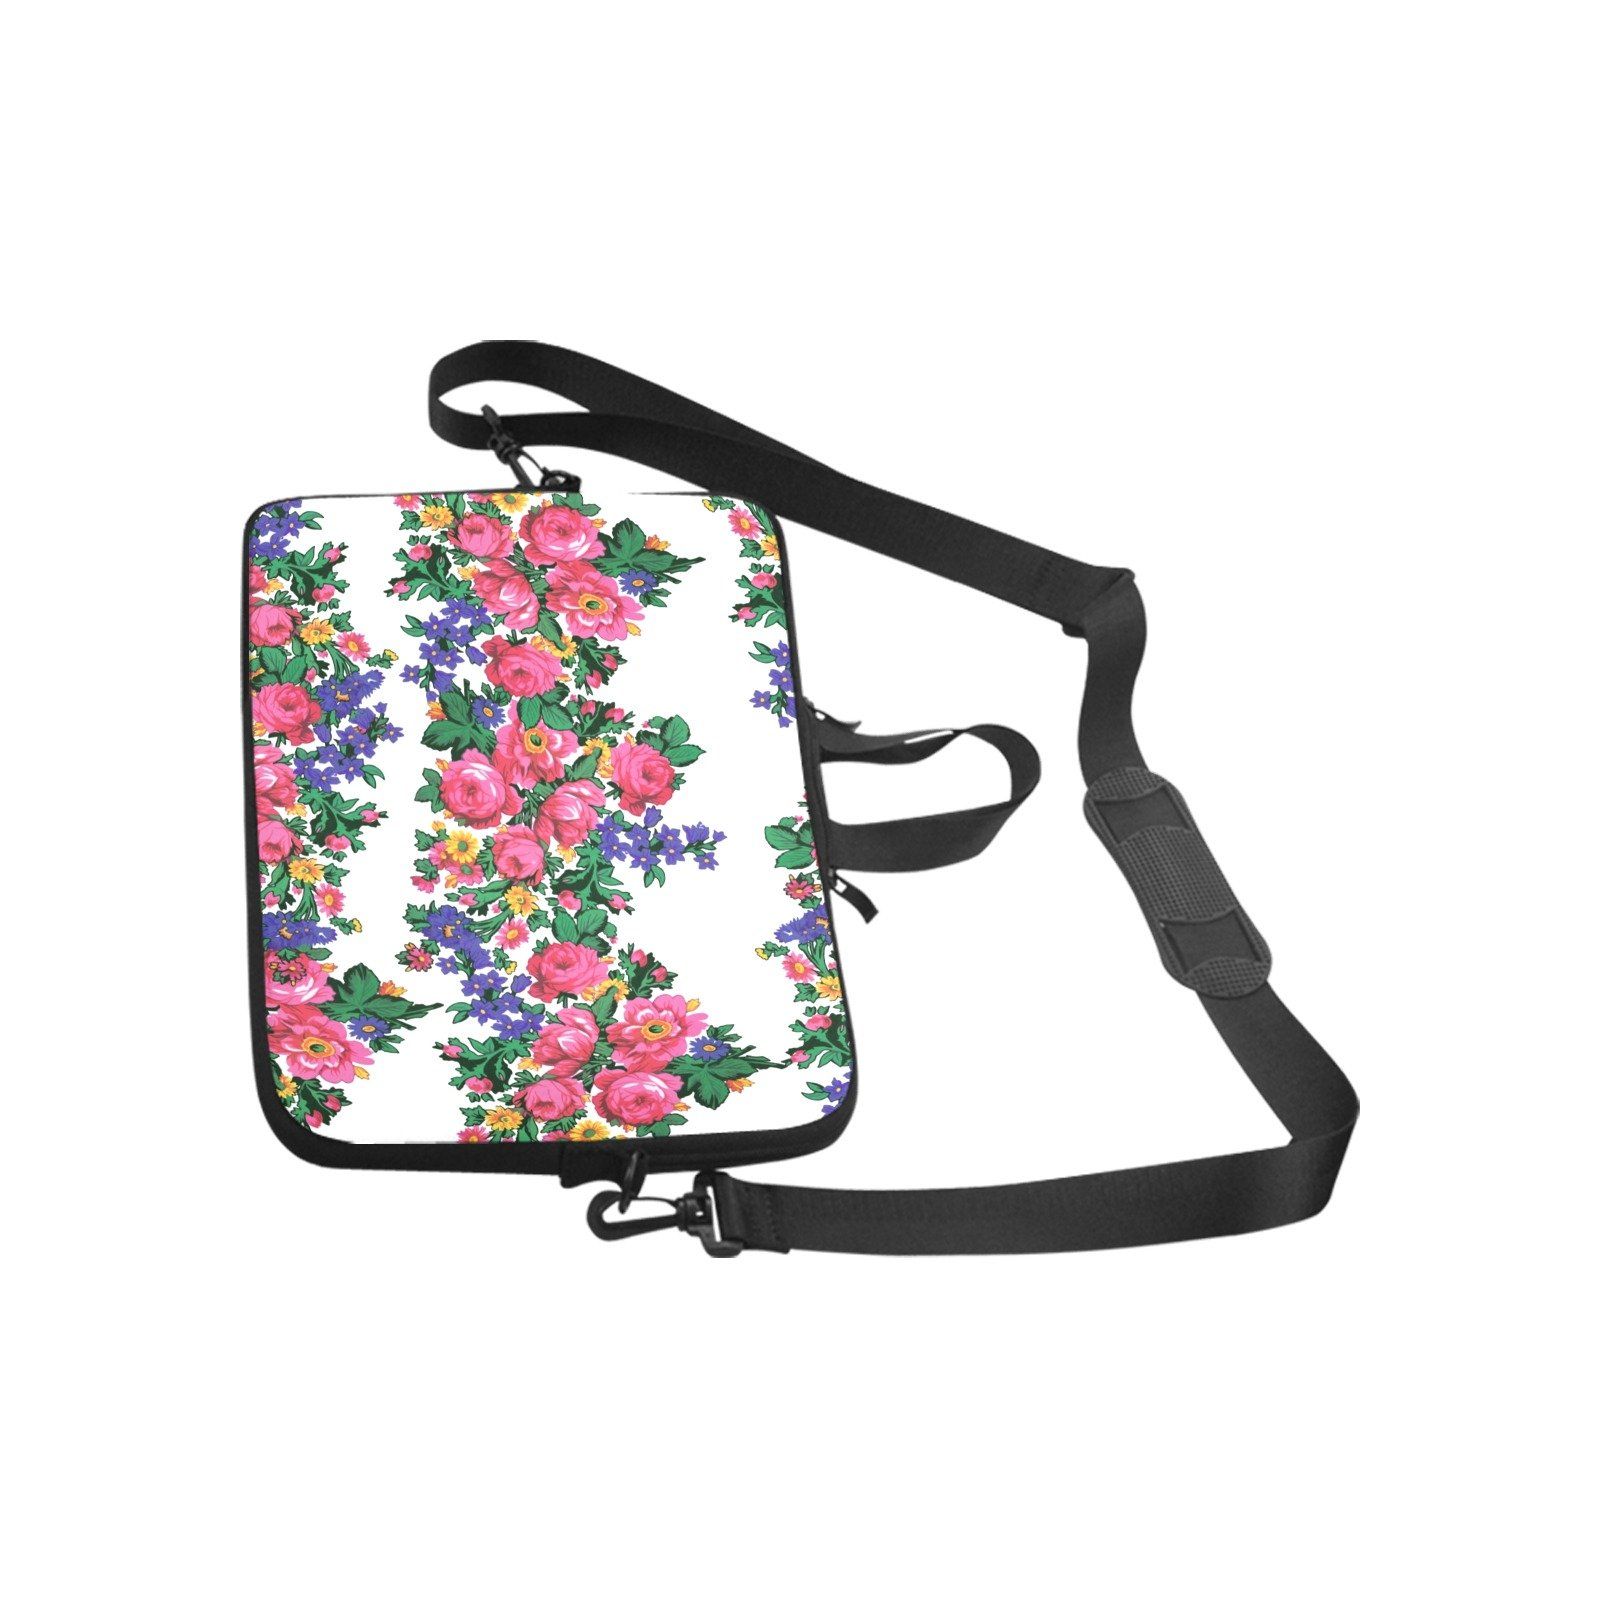 Kokum's Revenge White Laptop Handbags 11" bag e-joyer 